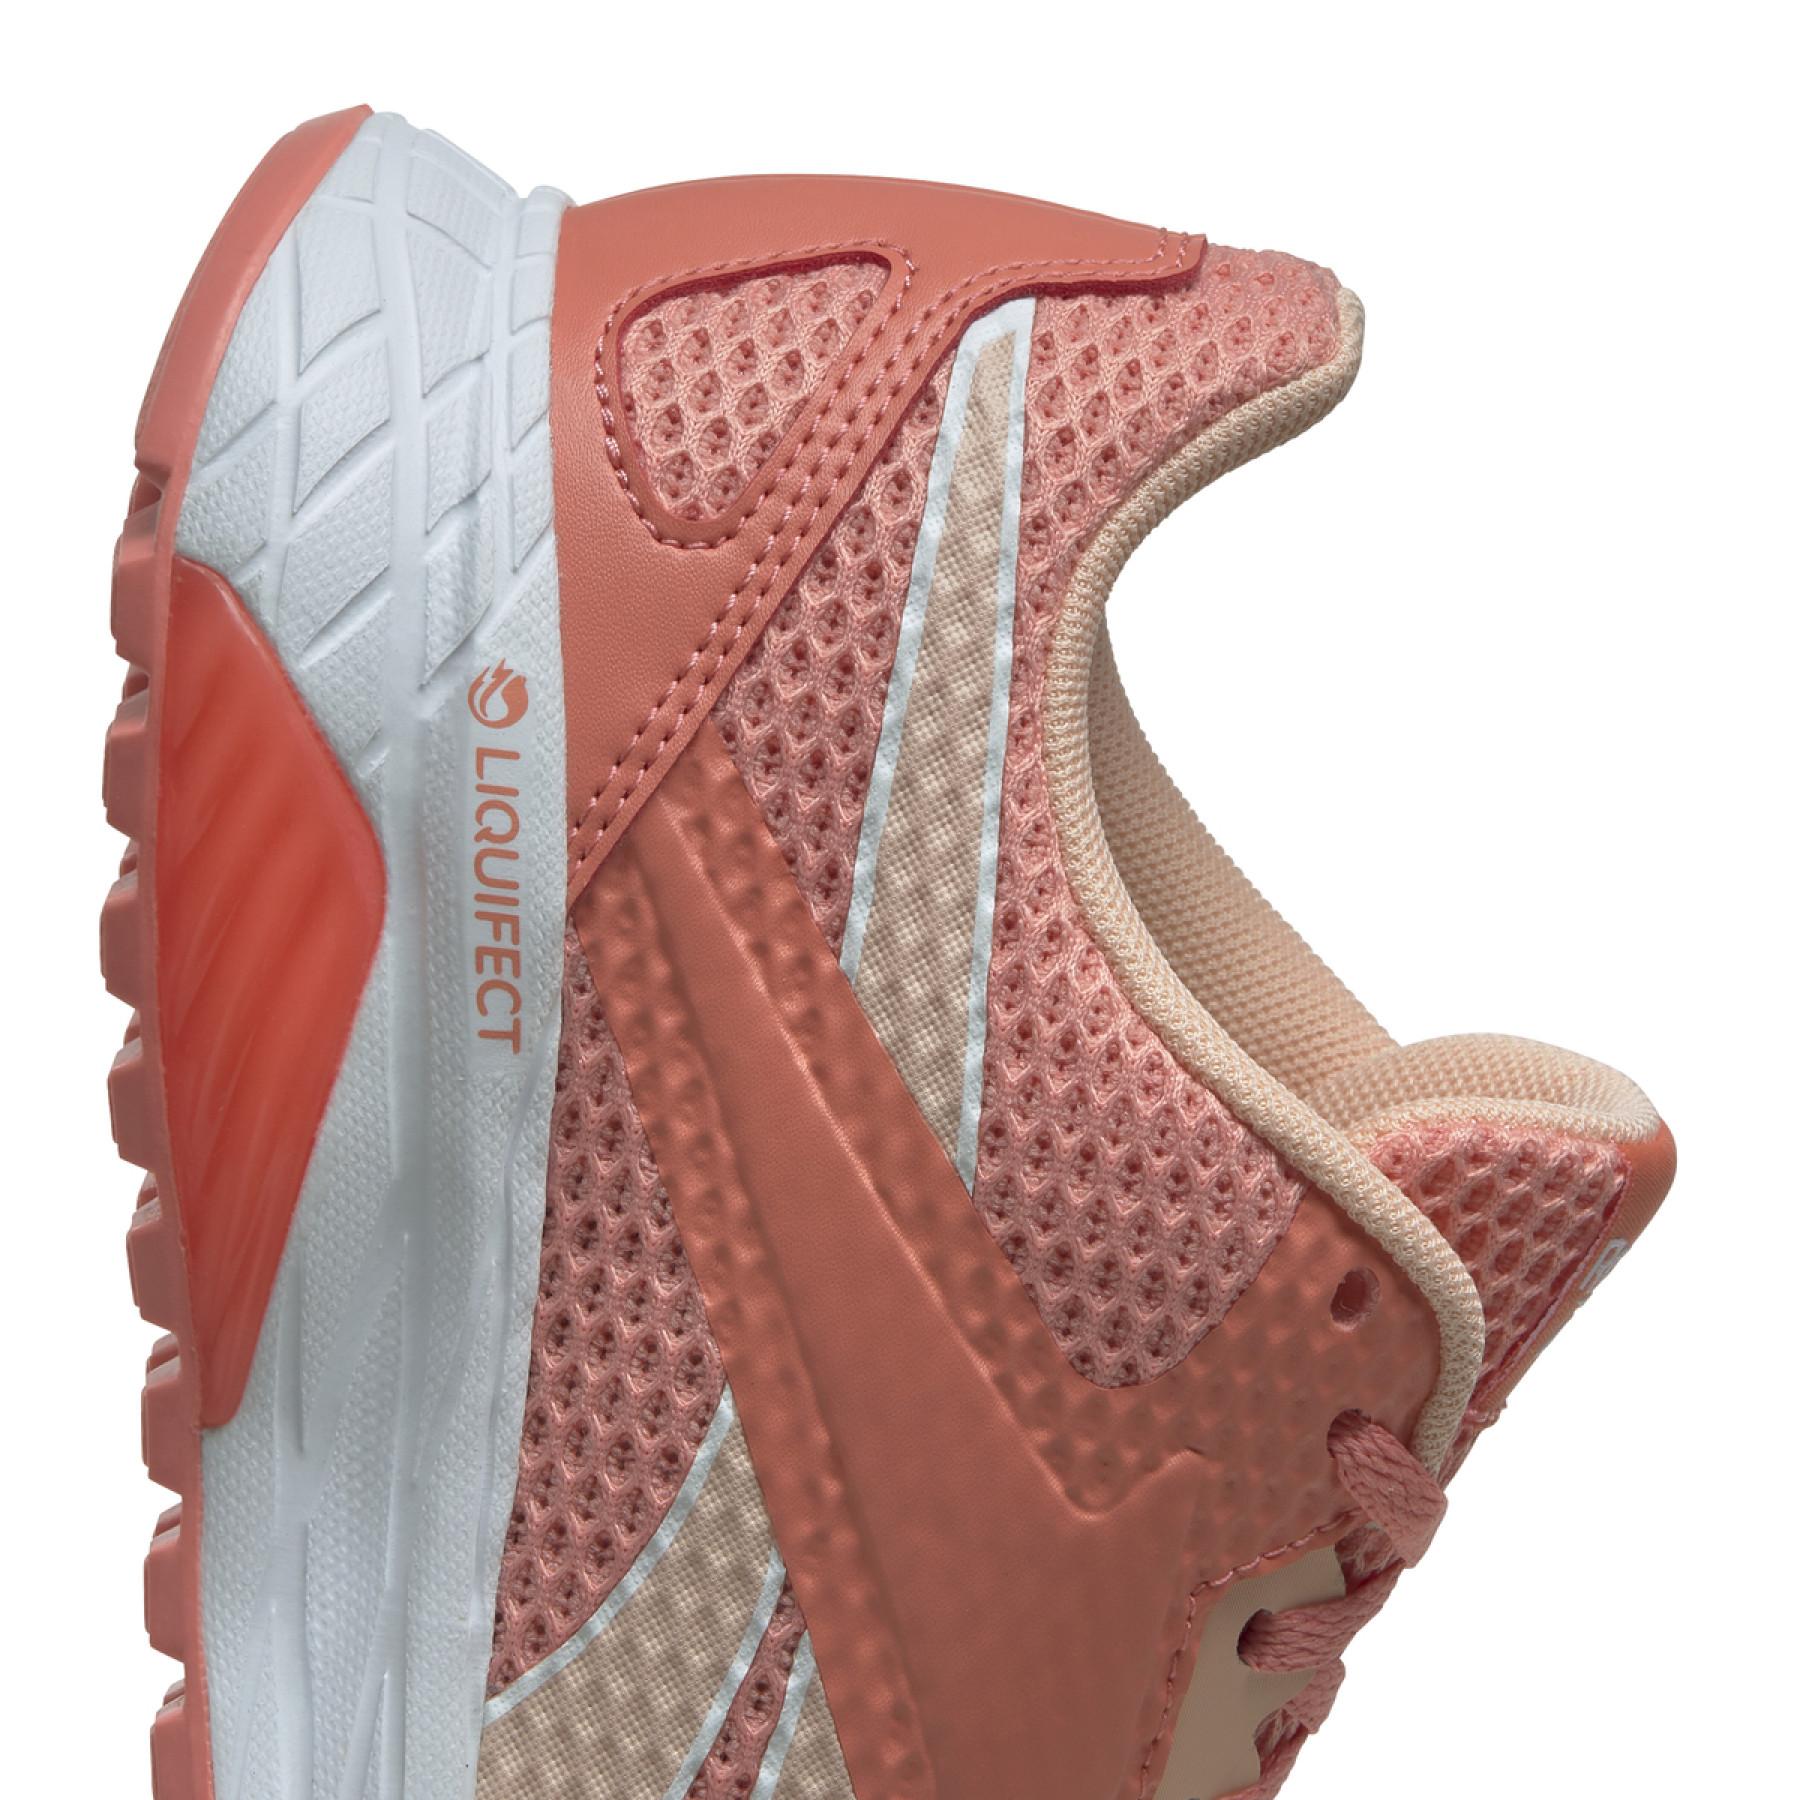 Chaussures de running femme Reebok Liquifect 90